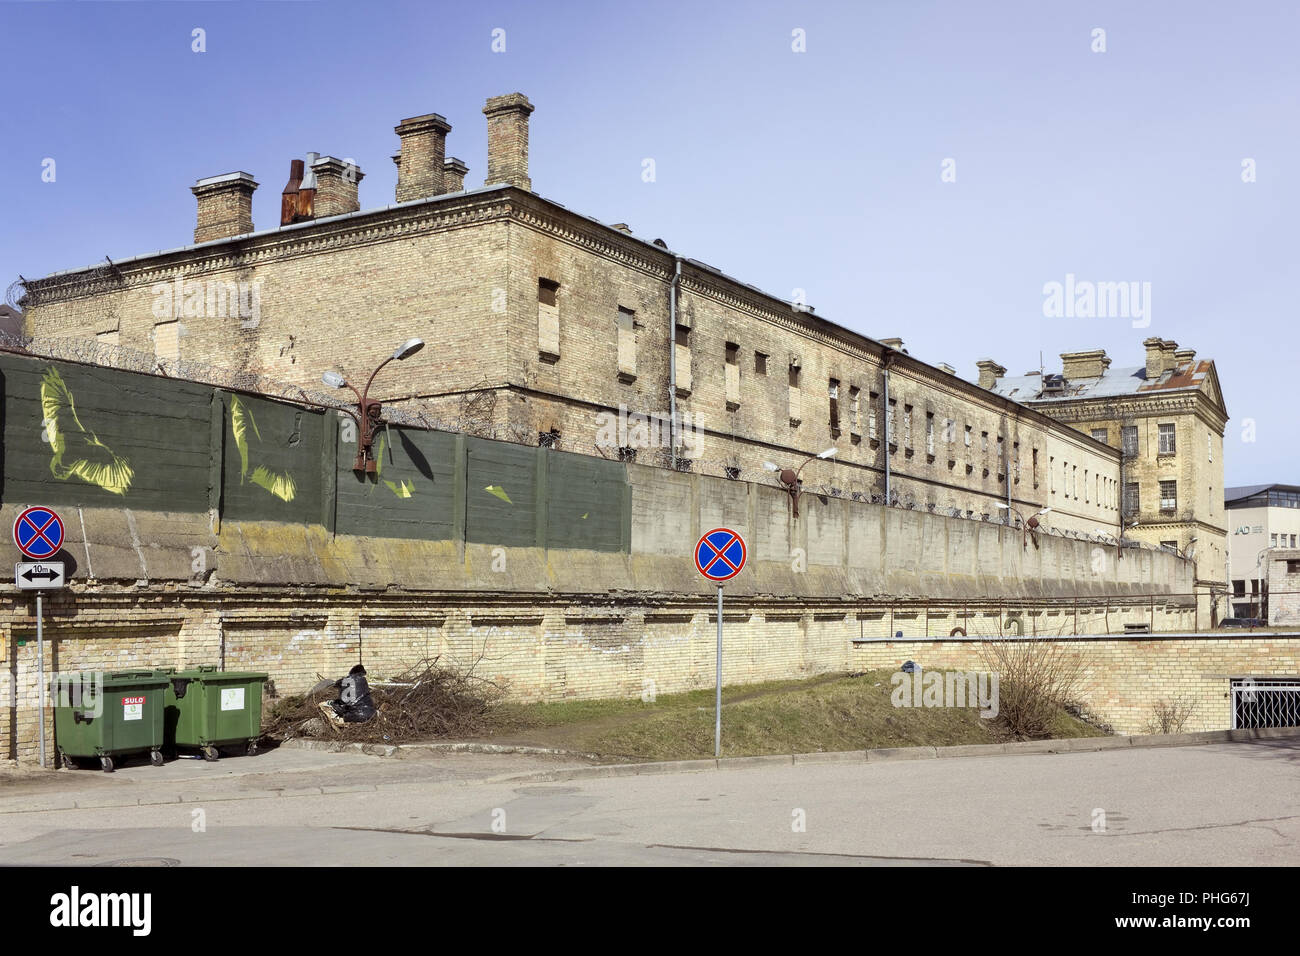 Prigione della città è situato nel centro storico Foto Stock